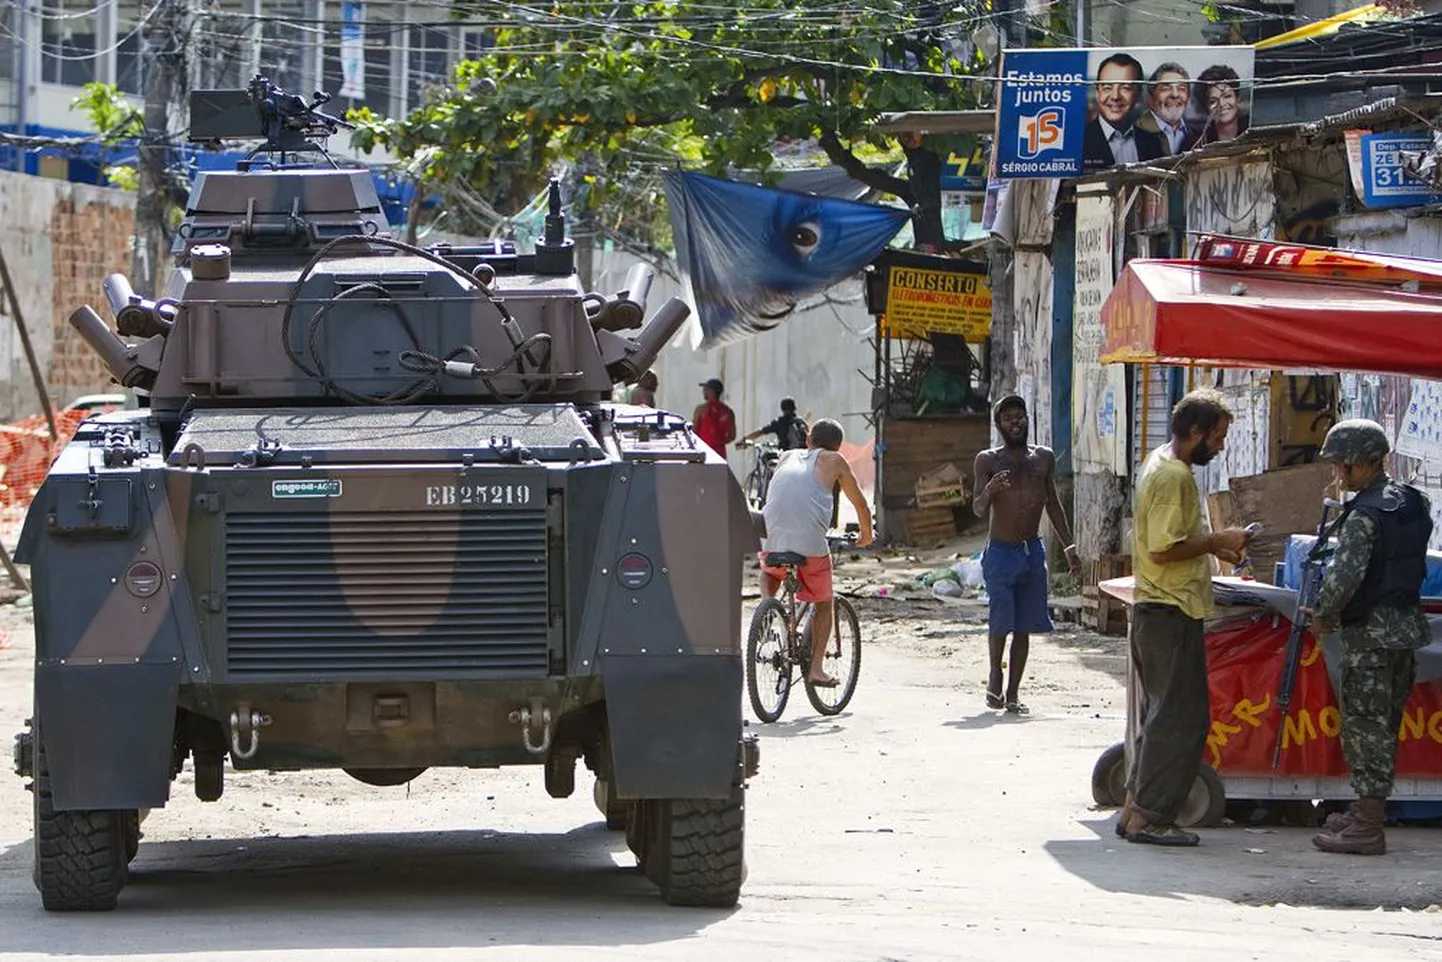 Armee haarangud Brasiilia suuruselt teises linnas Rio de Janeiros tegutsevate narkojõukude tabamiseks on sagedased.